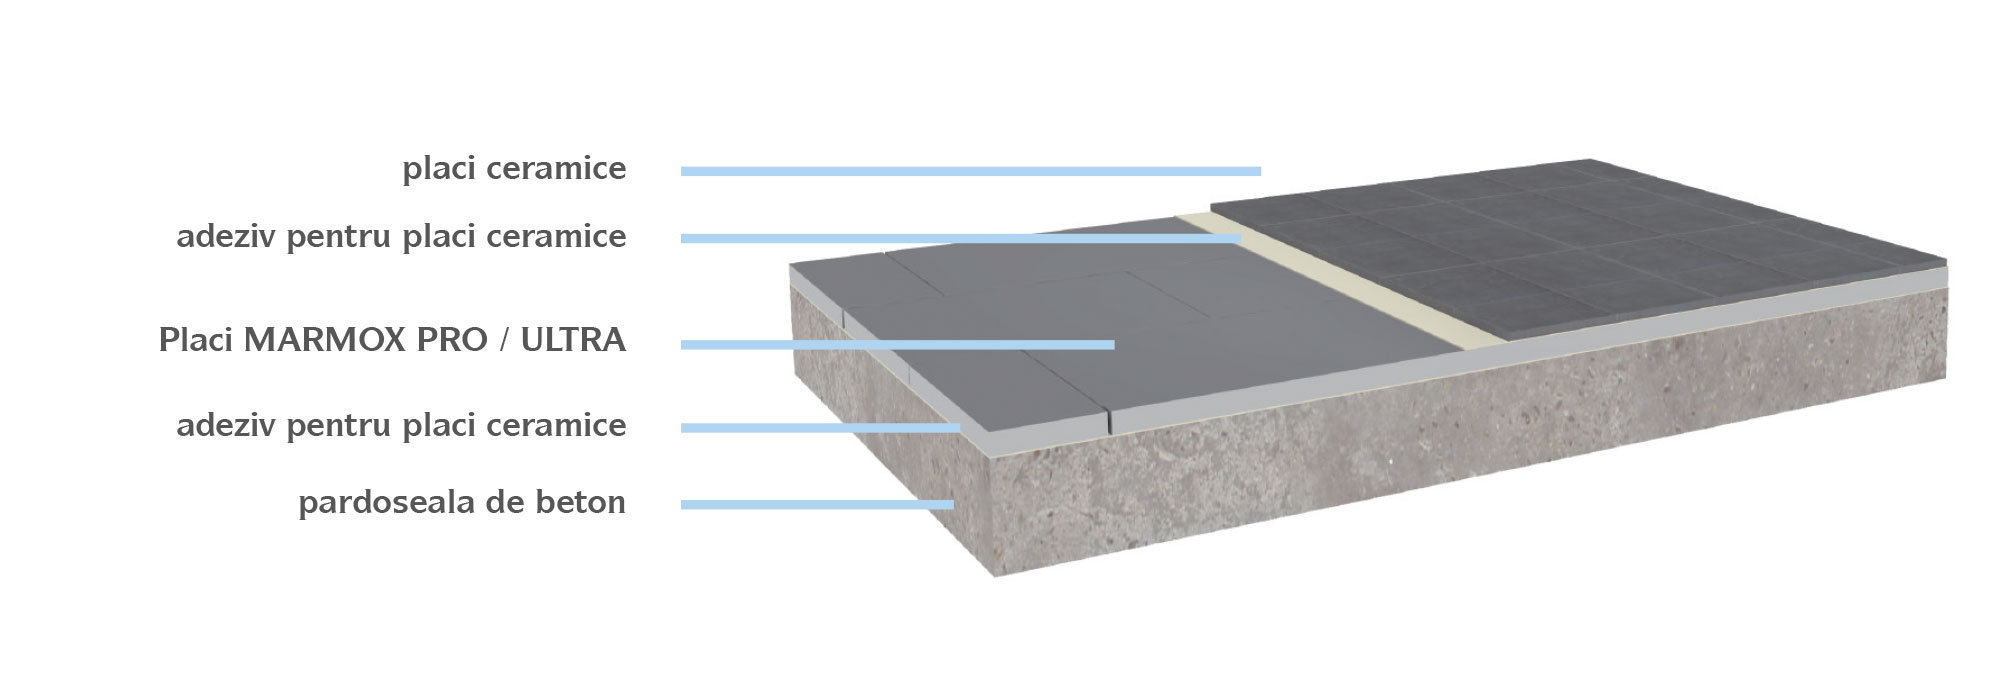 instalarea Placilor MARMOX PRO / ULTRA pe pardoseli de beton